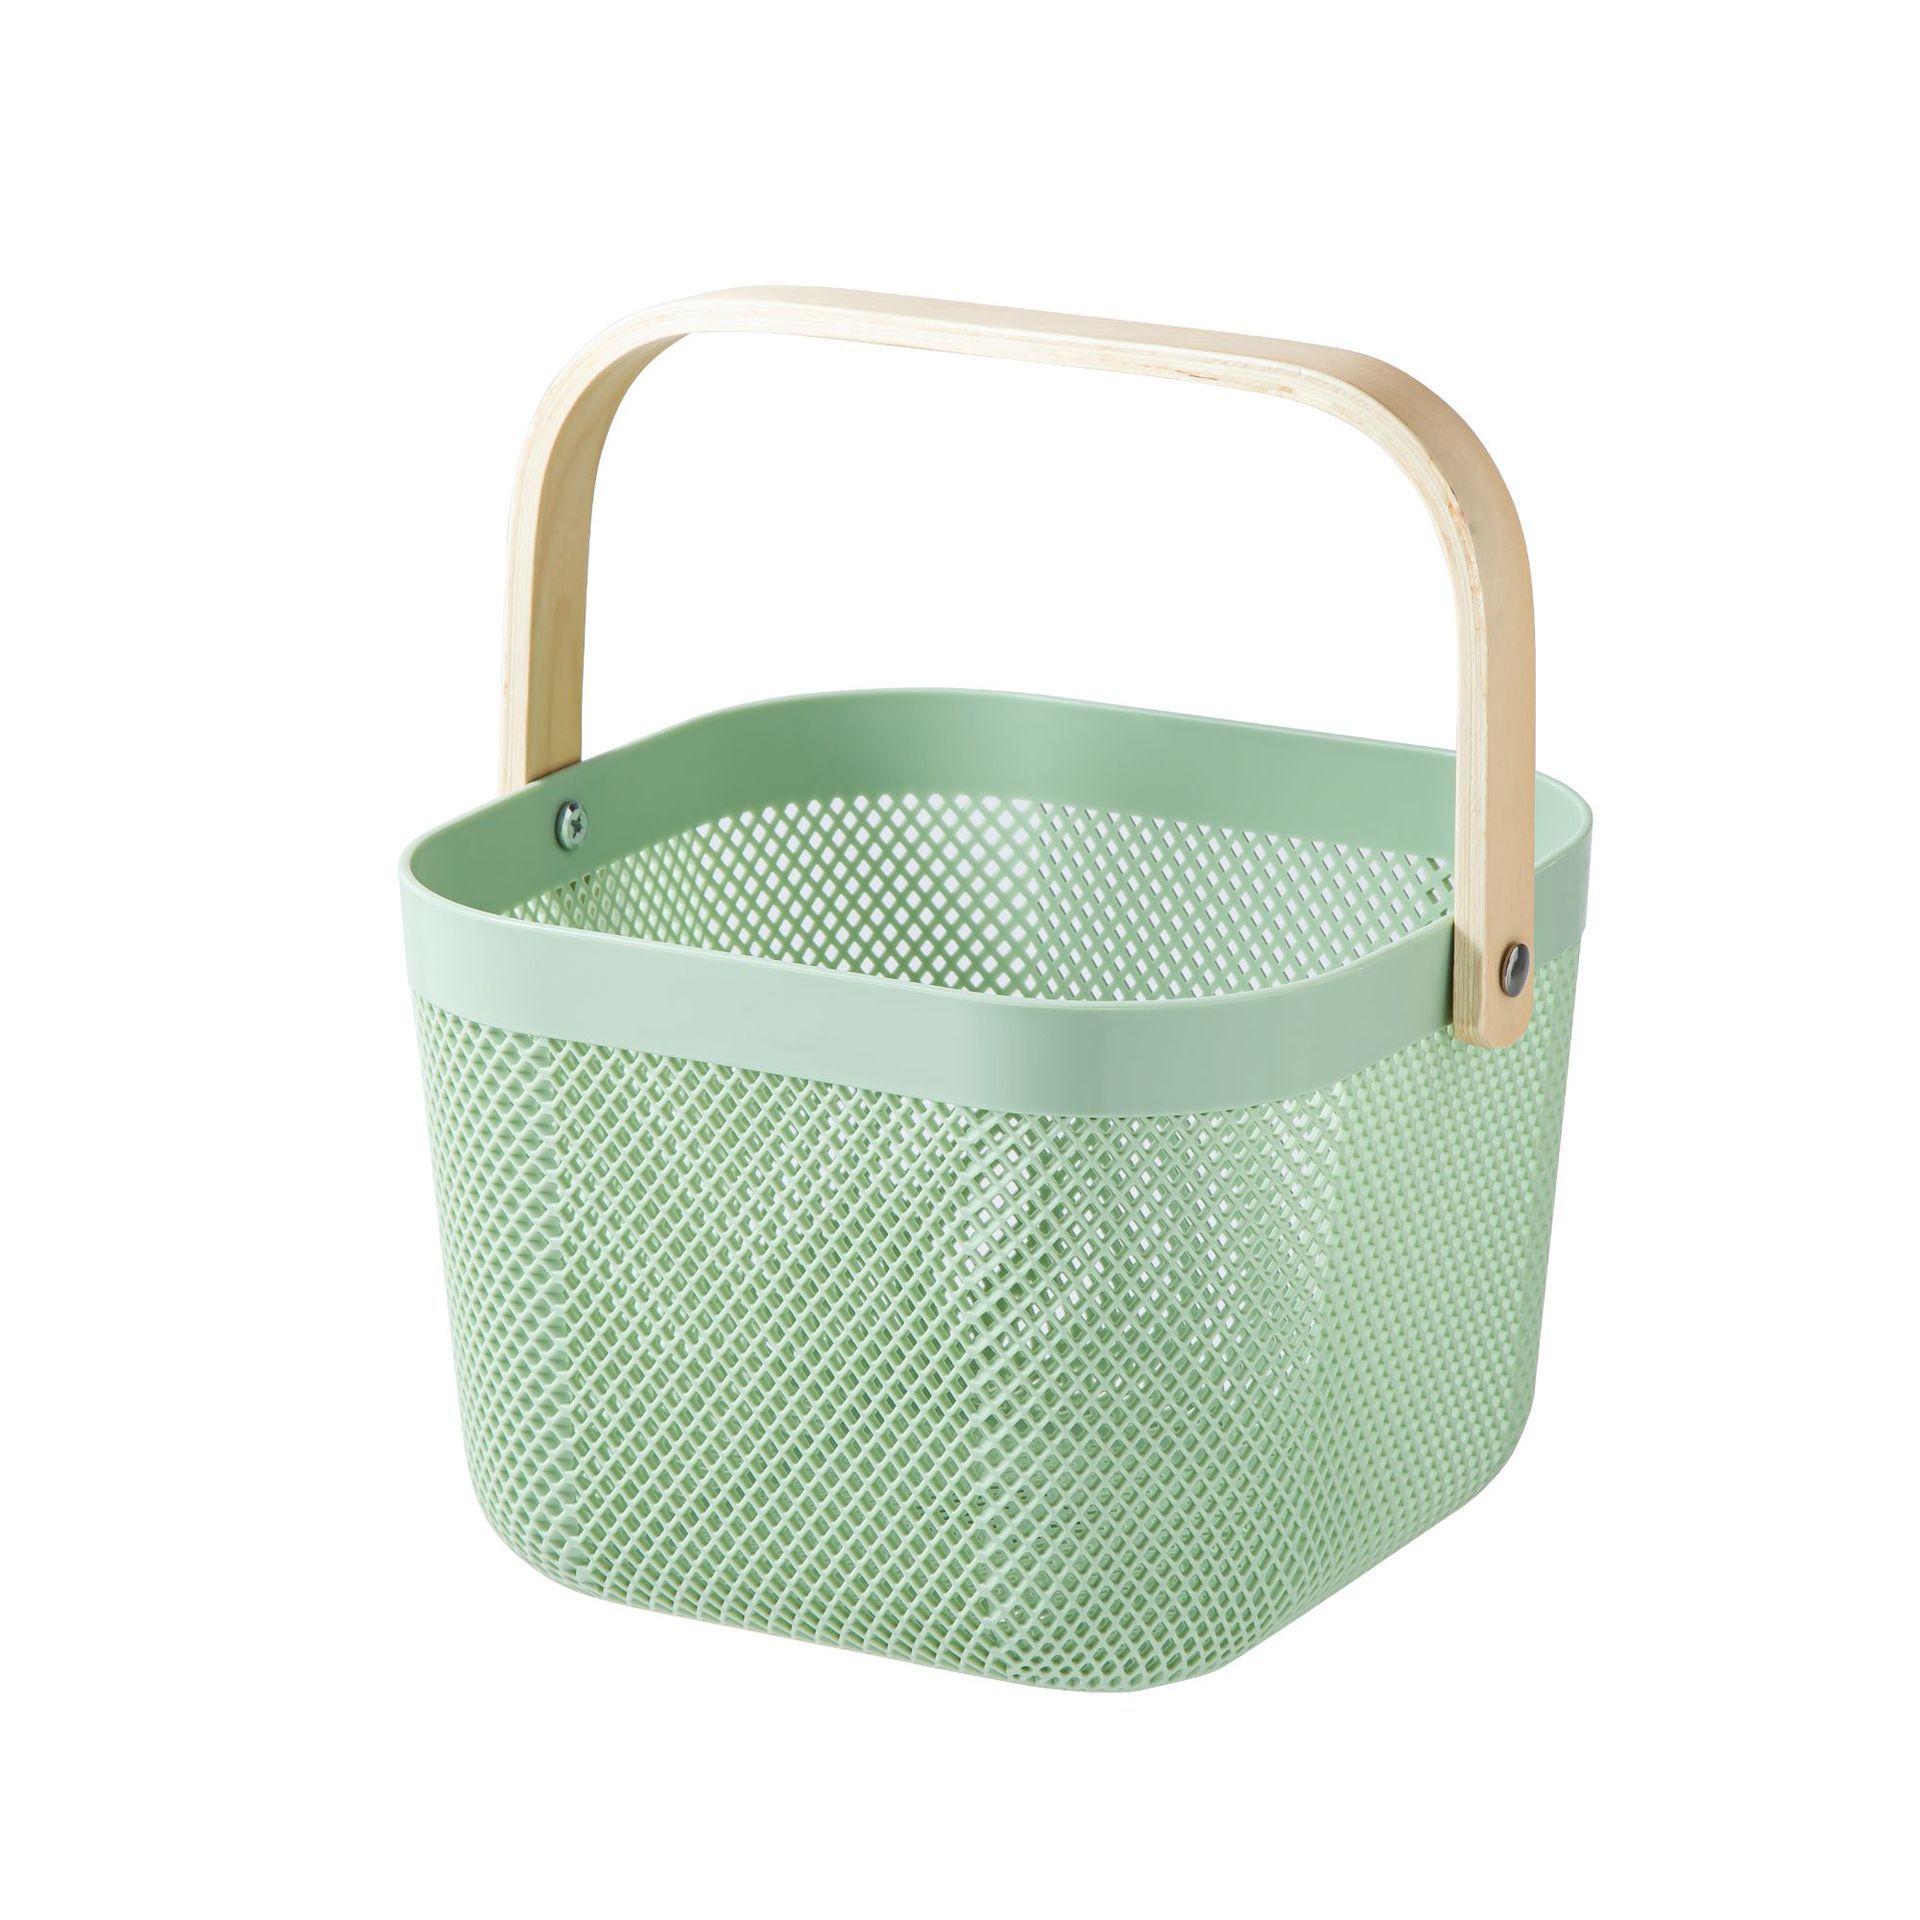 Simple Storage Basket Internet Celebrity Storage Basket Household Basket with Solid Wood Handle Vegetable Basket Fruit Basket Bath Storage Basket